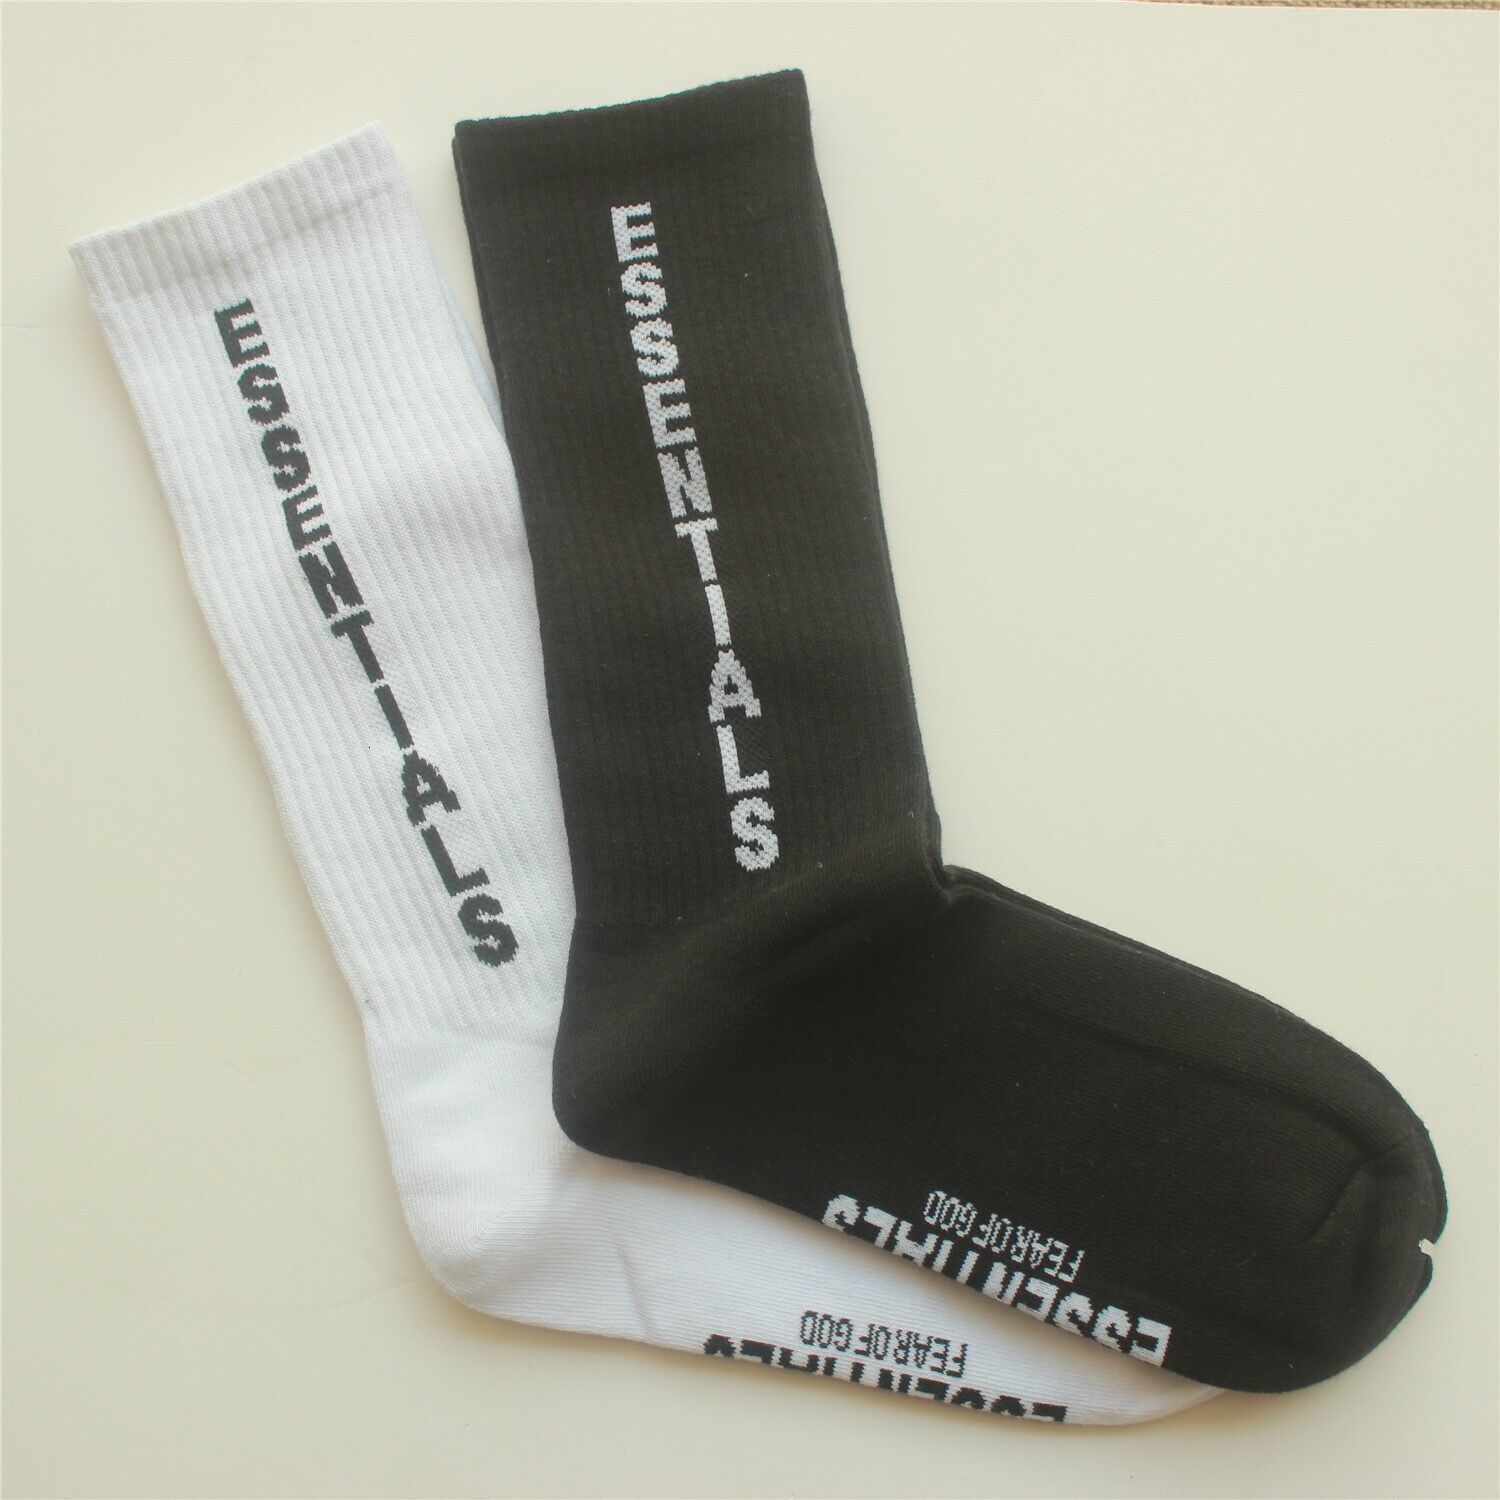 

Hight Quality FOG ESSENTIALS men women unisex socks fear of god tide skateboard stockings size 36-44 black white